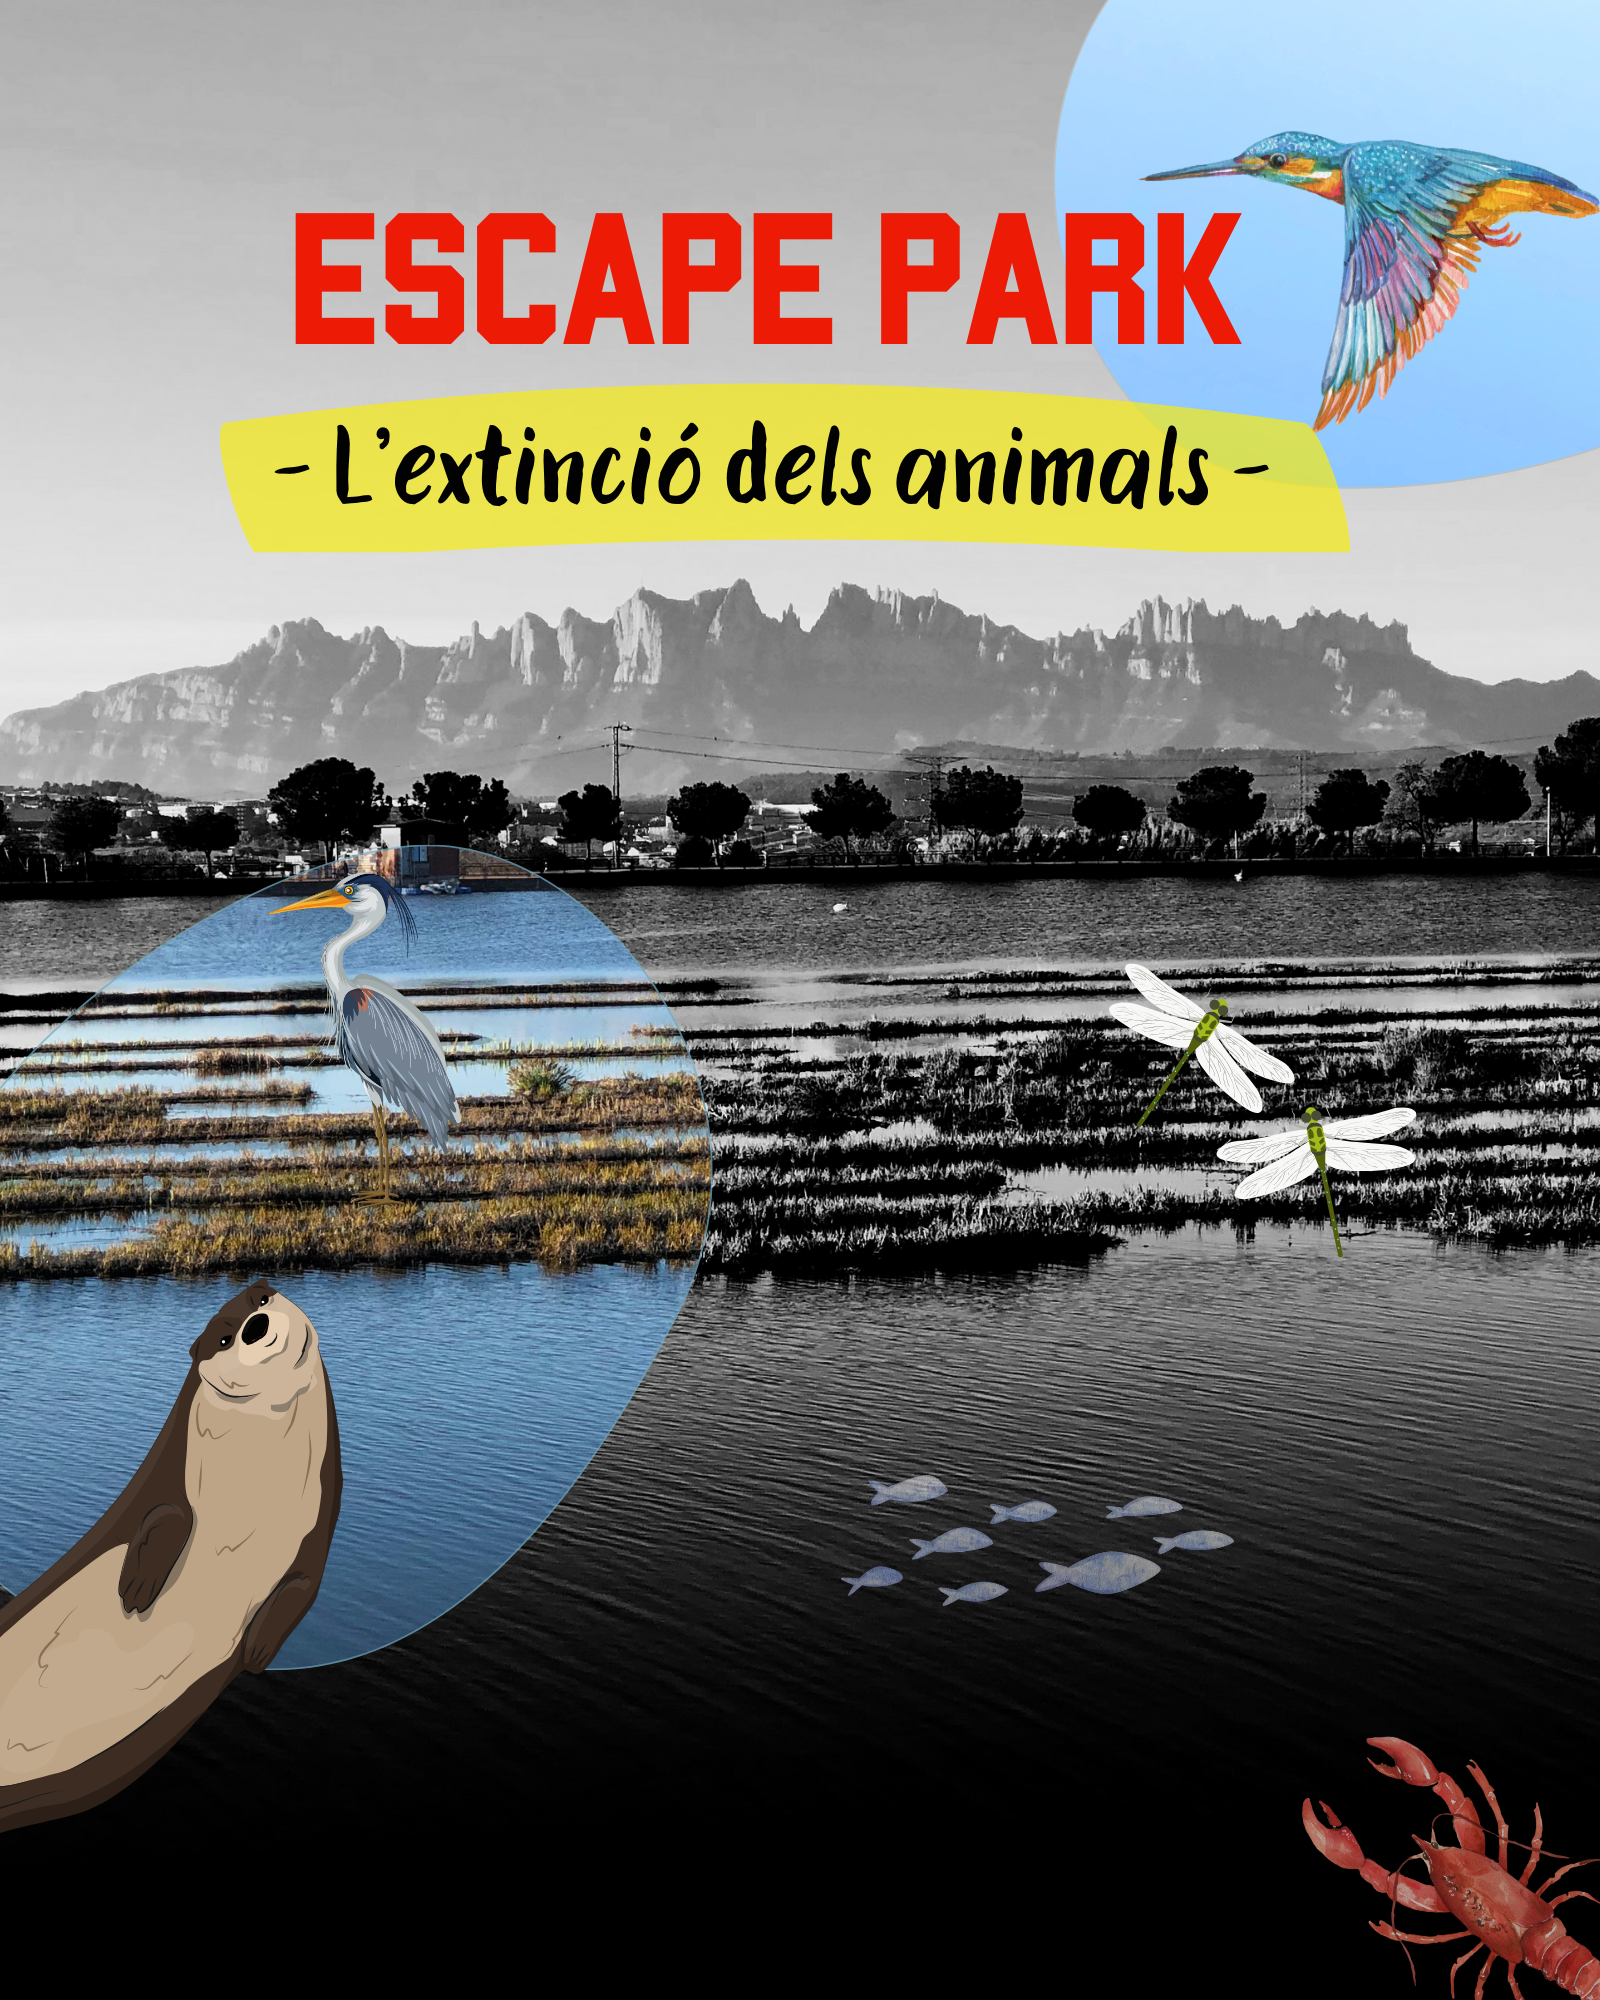 Escape Park: L’extinció dels animals